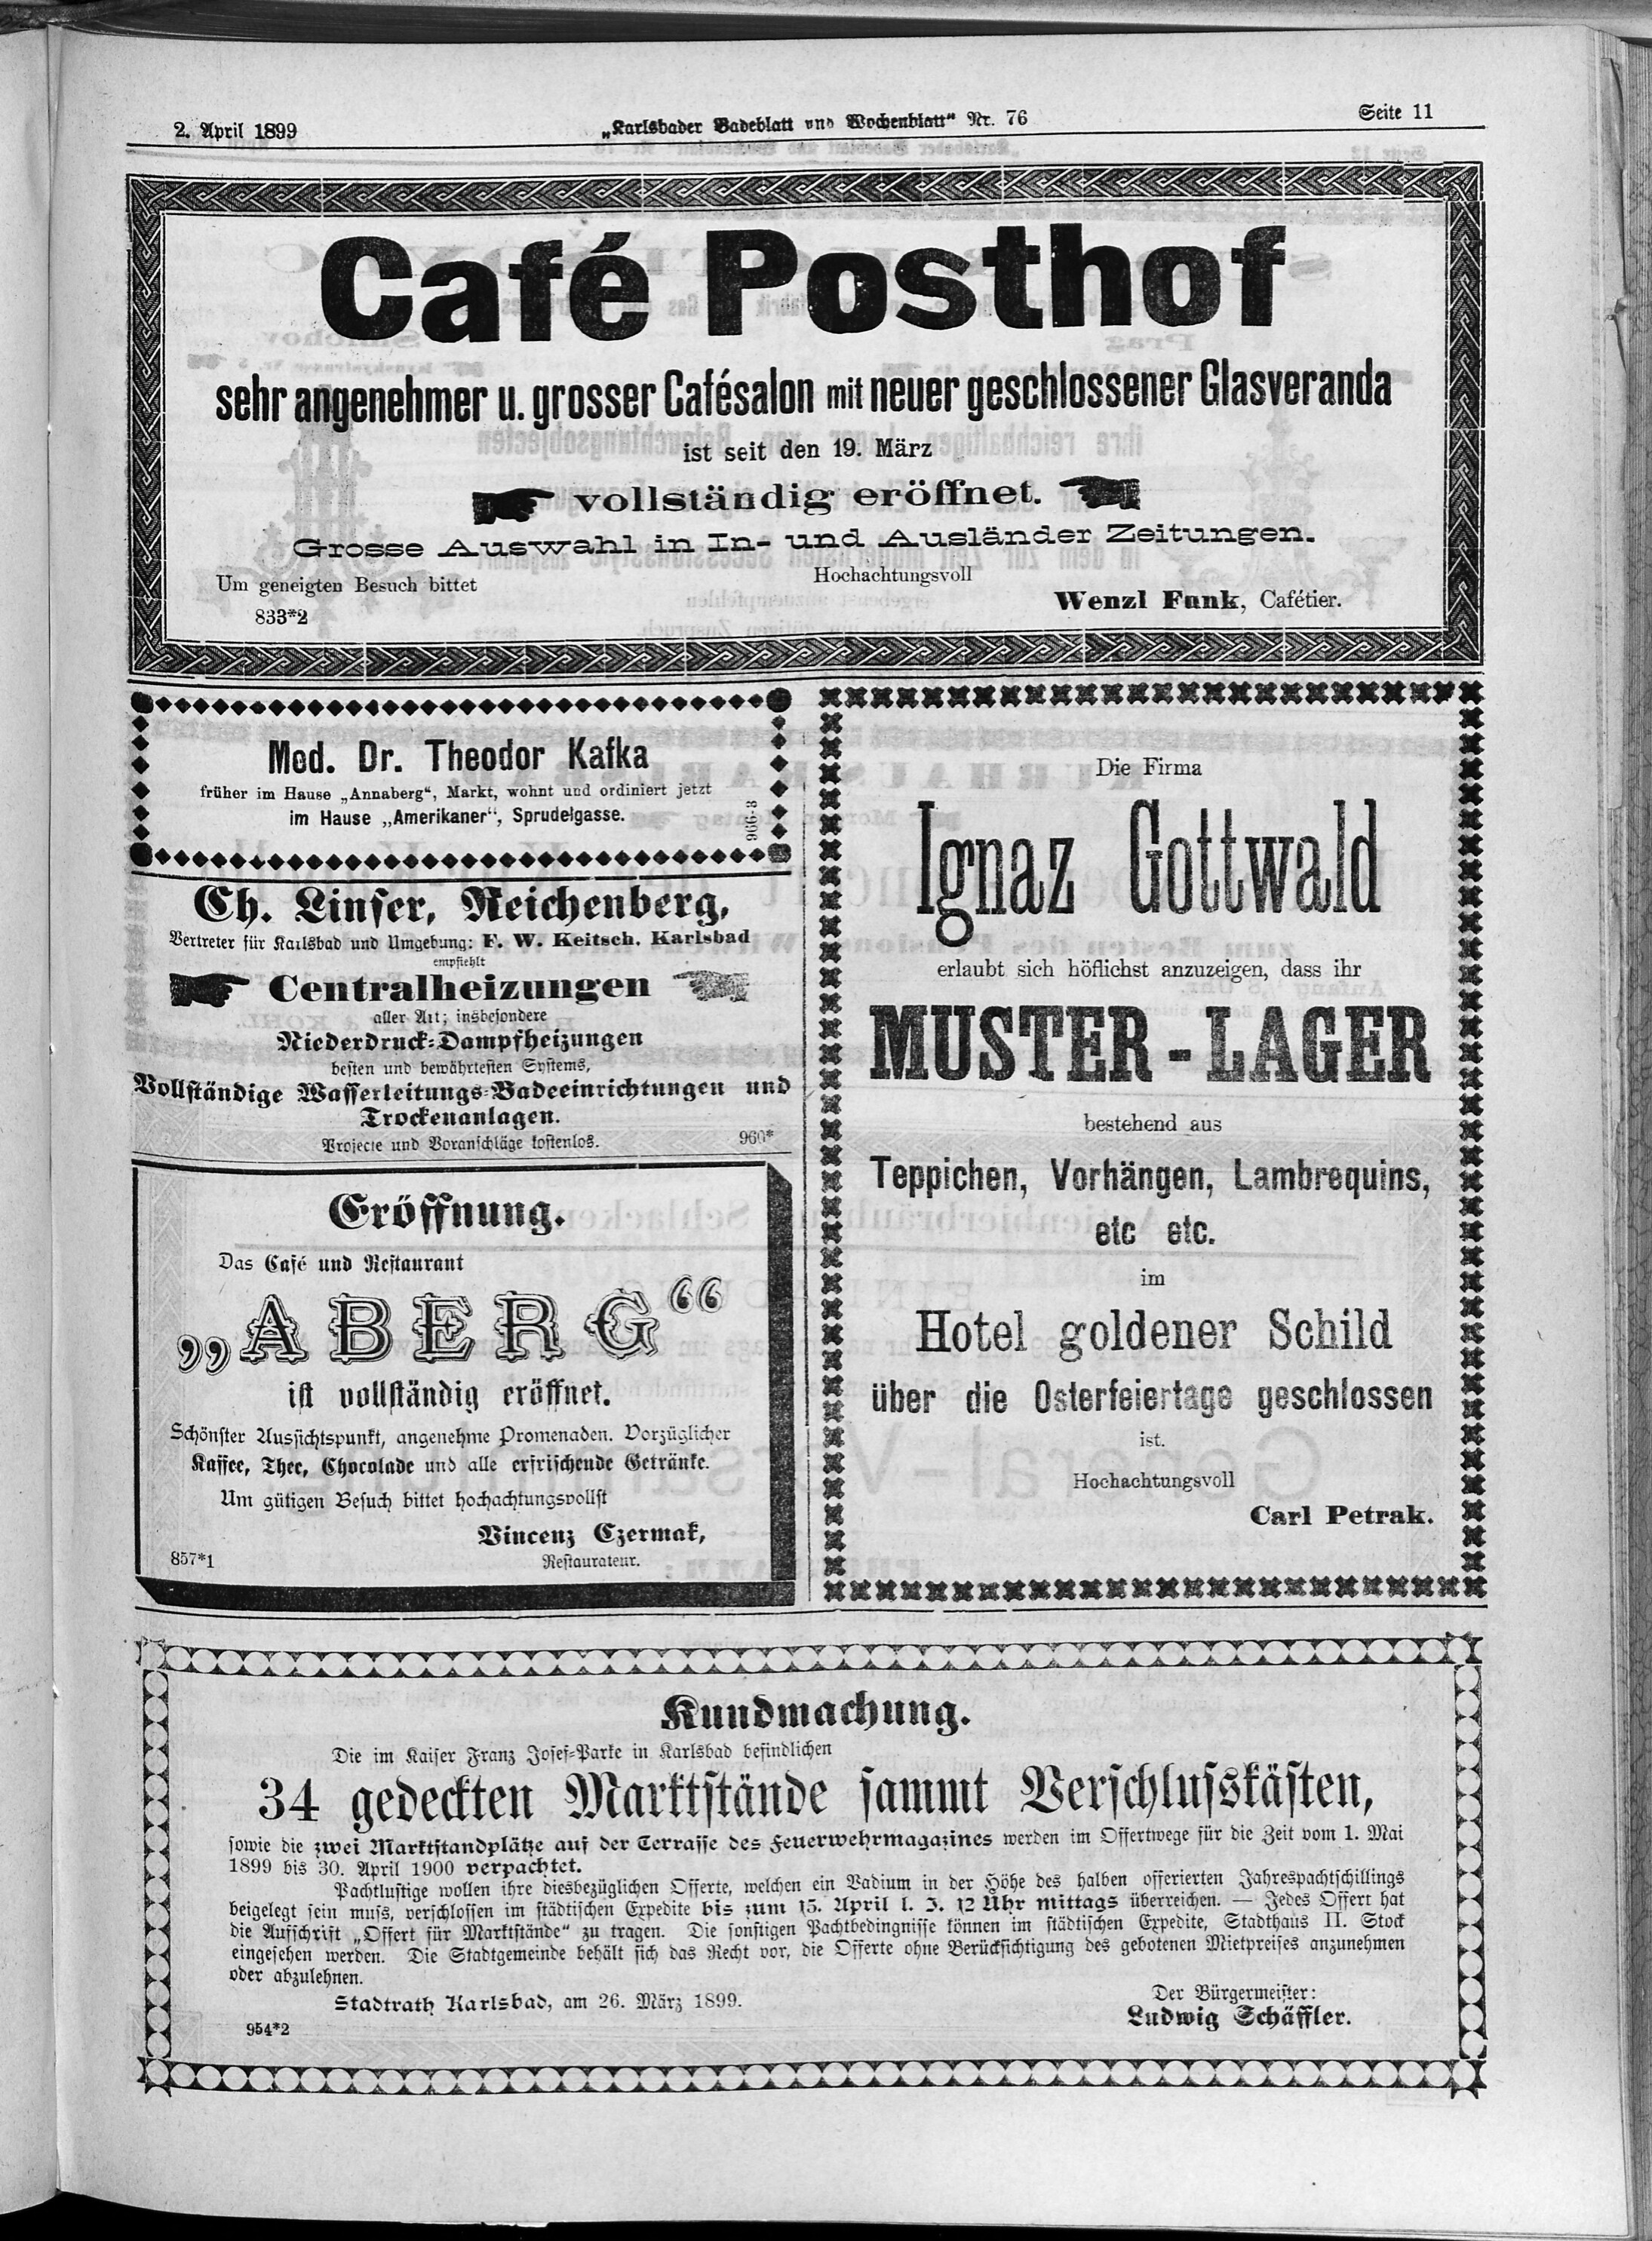 11. karlsbader-badeblatt-1899-04-02-n76_3425